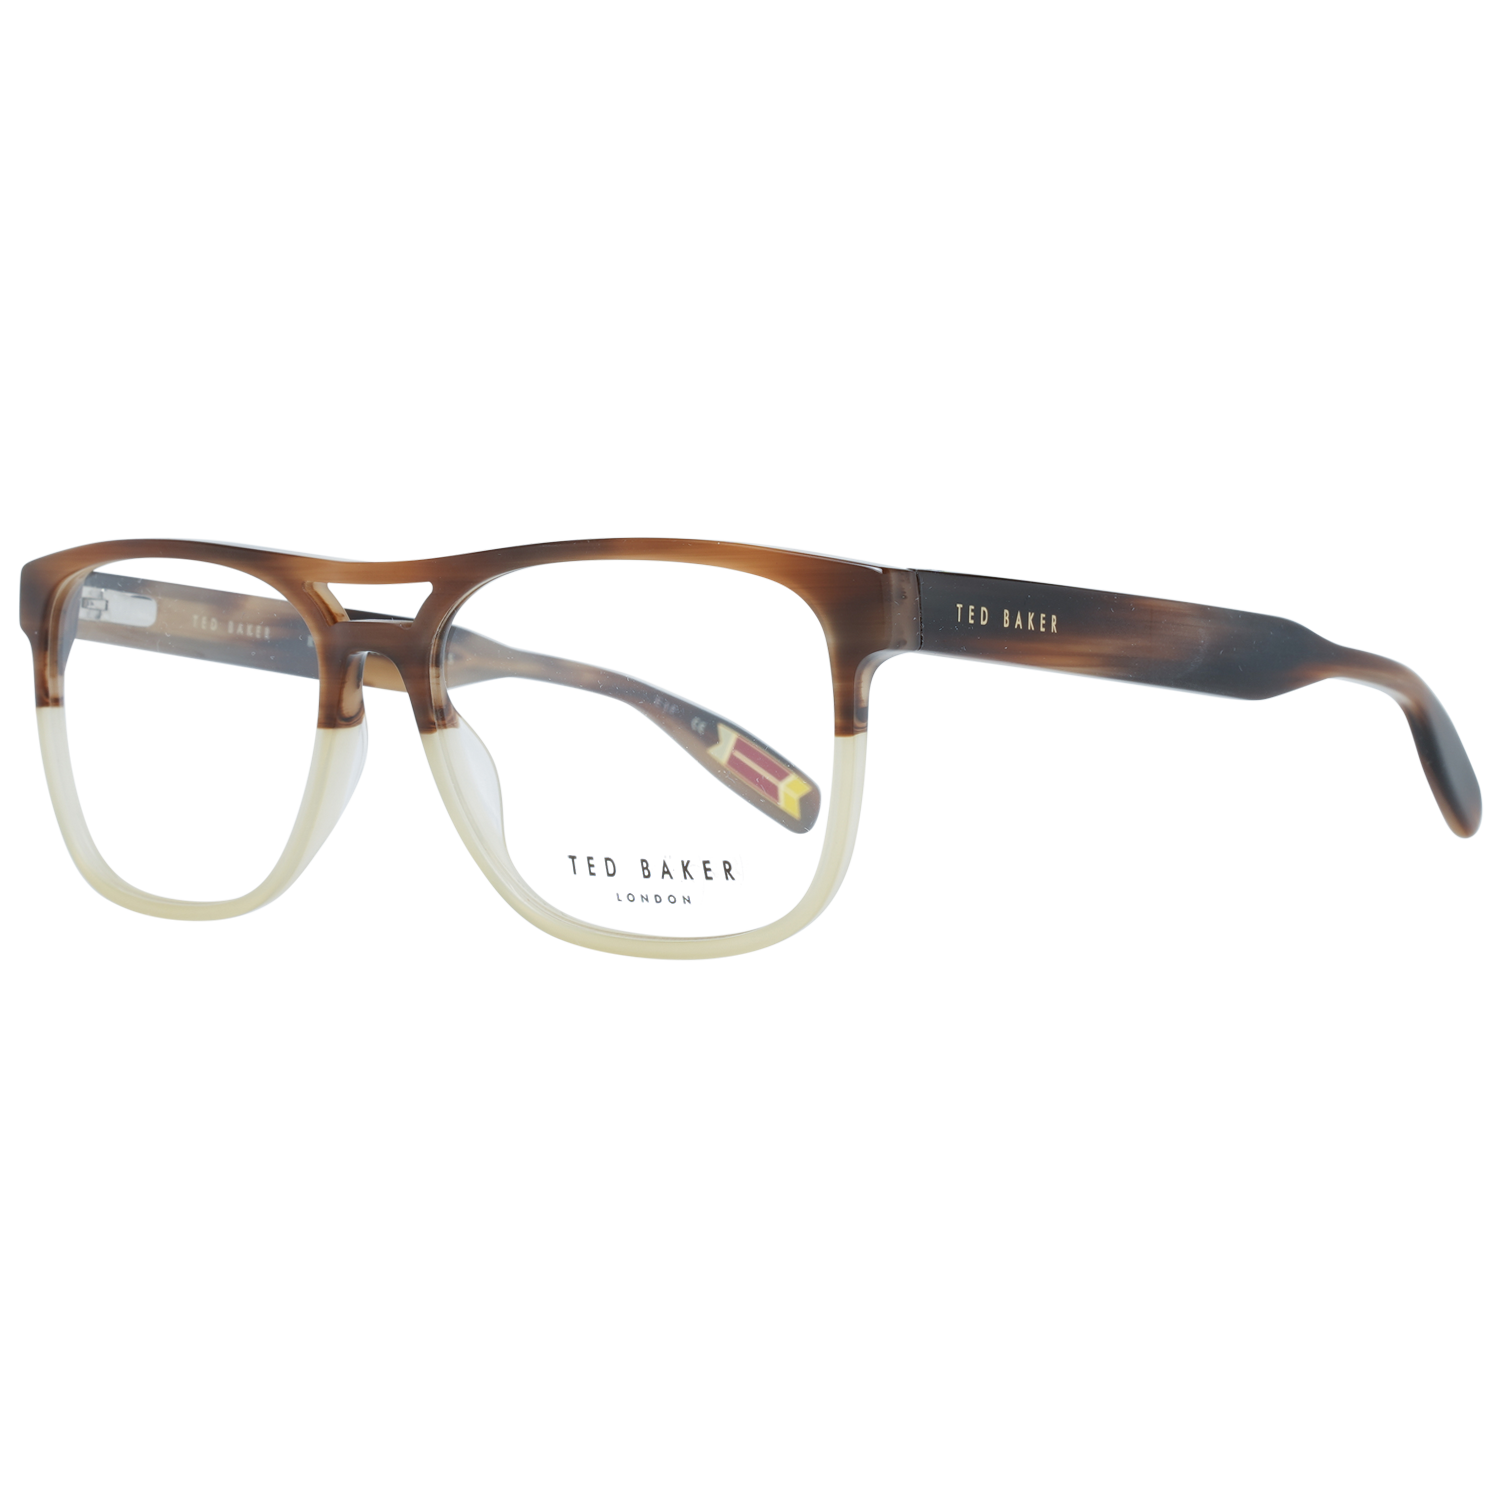 Ted Baker Frames Ted Baker Optical Frame TB8207 162 56 Holden Eyeglasses Eyewear UK USA Australia 